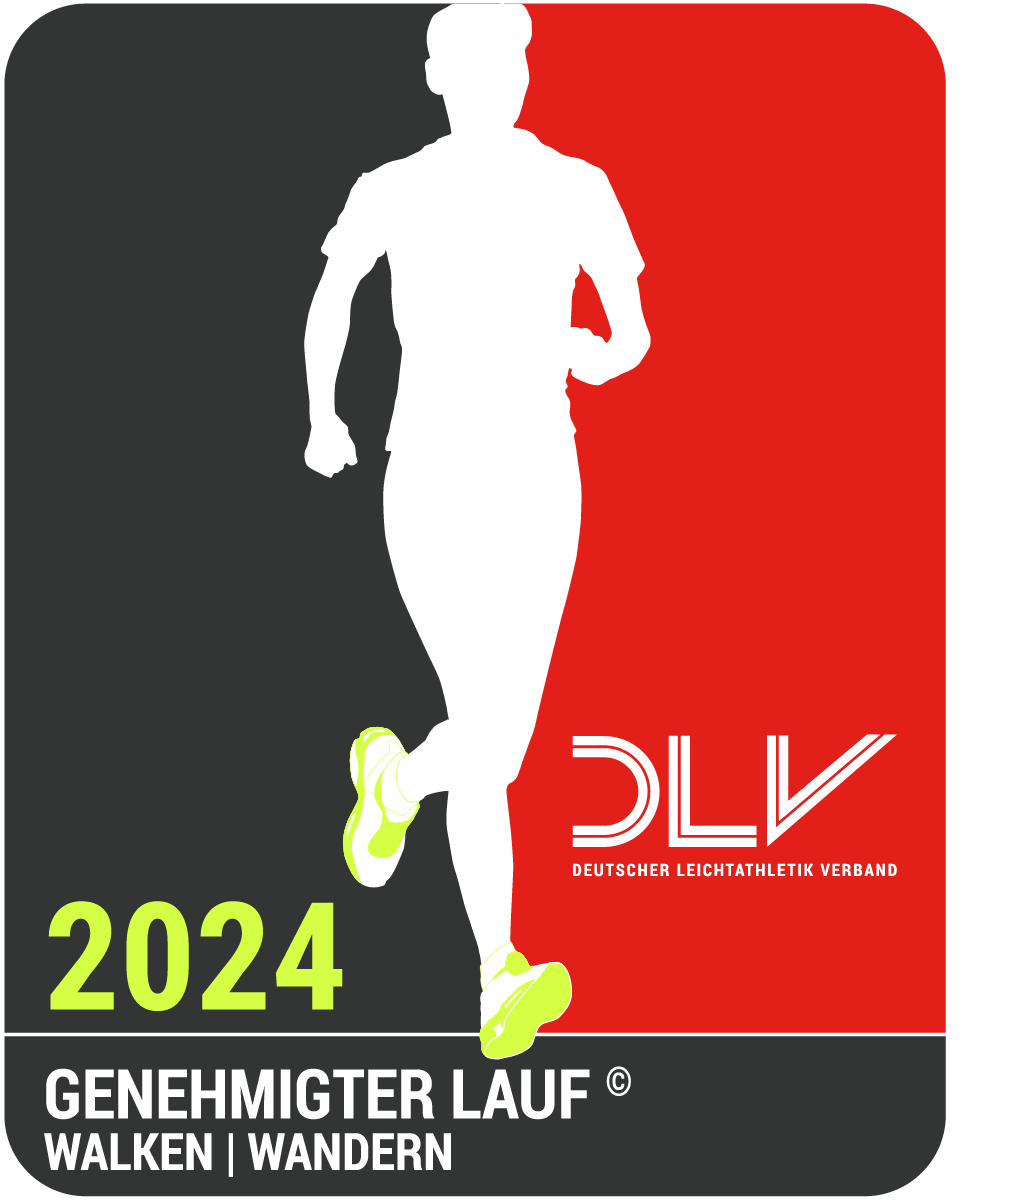 Deutscher Leichtathletik Verband Logo Genehmigter Lauf 2024